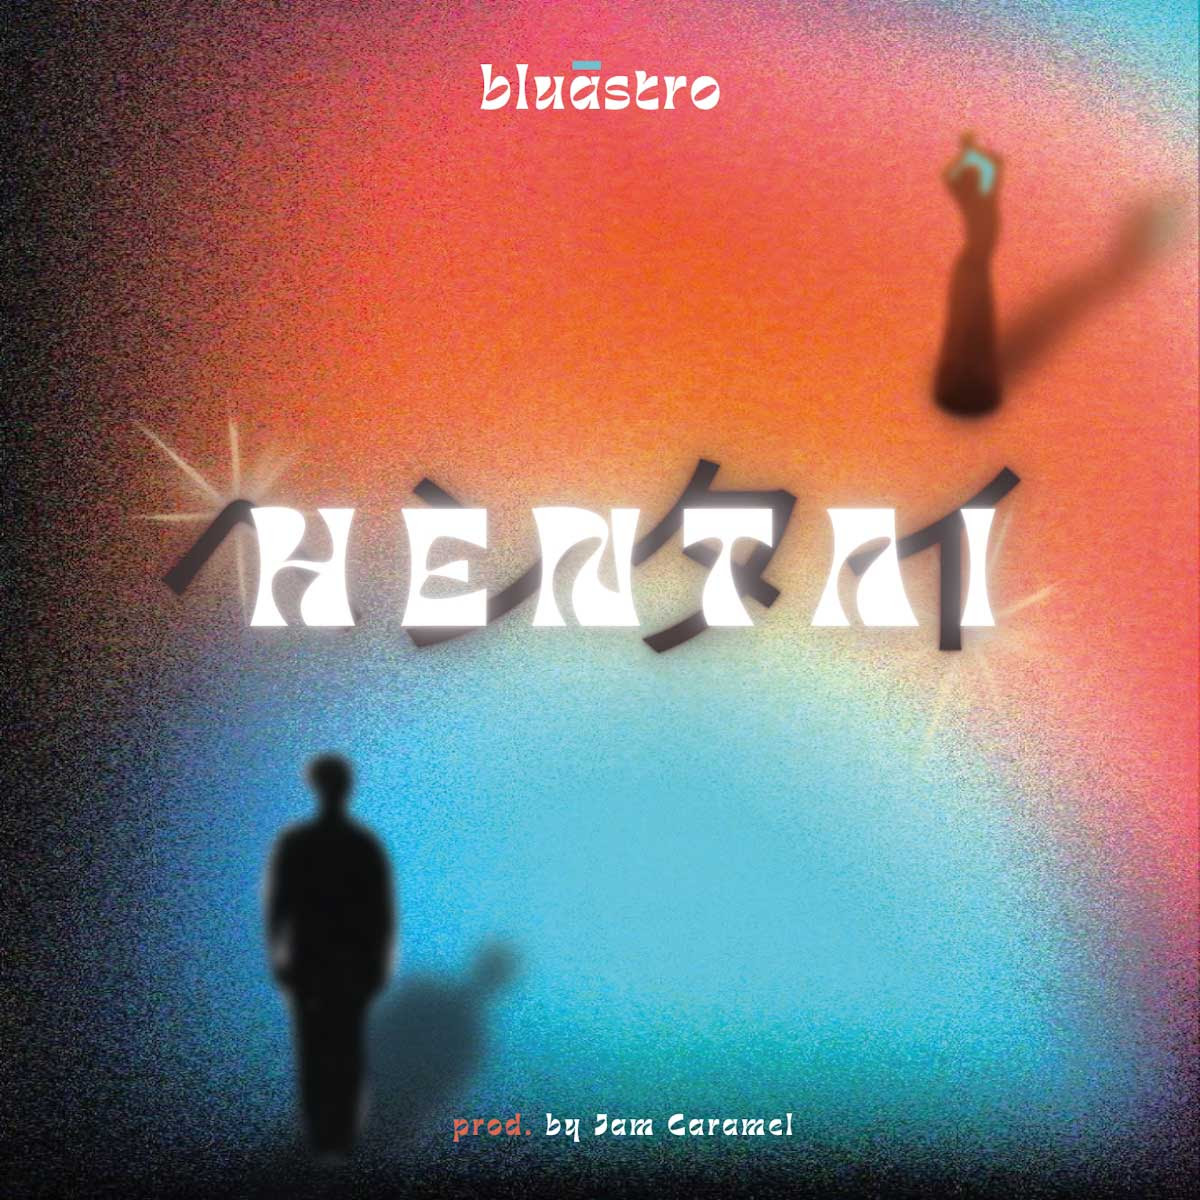 bluāstro: disponibile sui digital store “HENTAI” il nuovo singolo